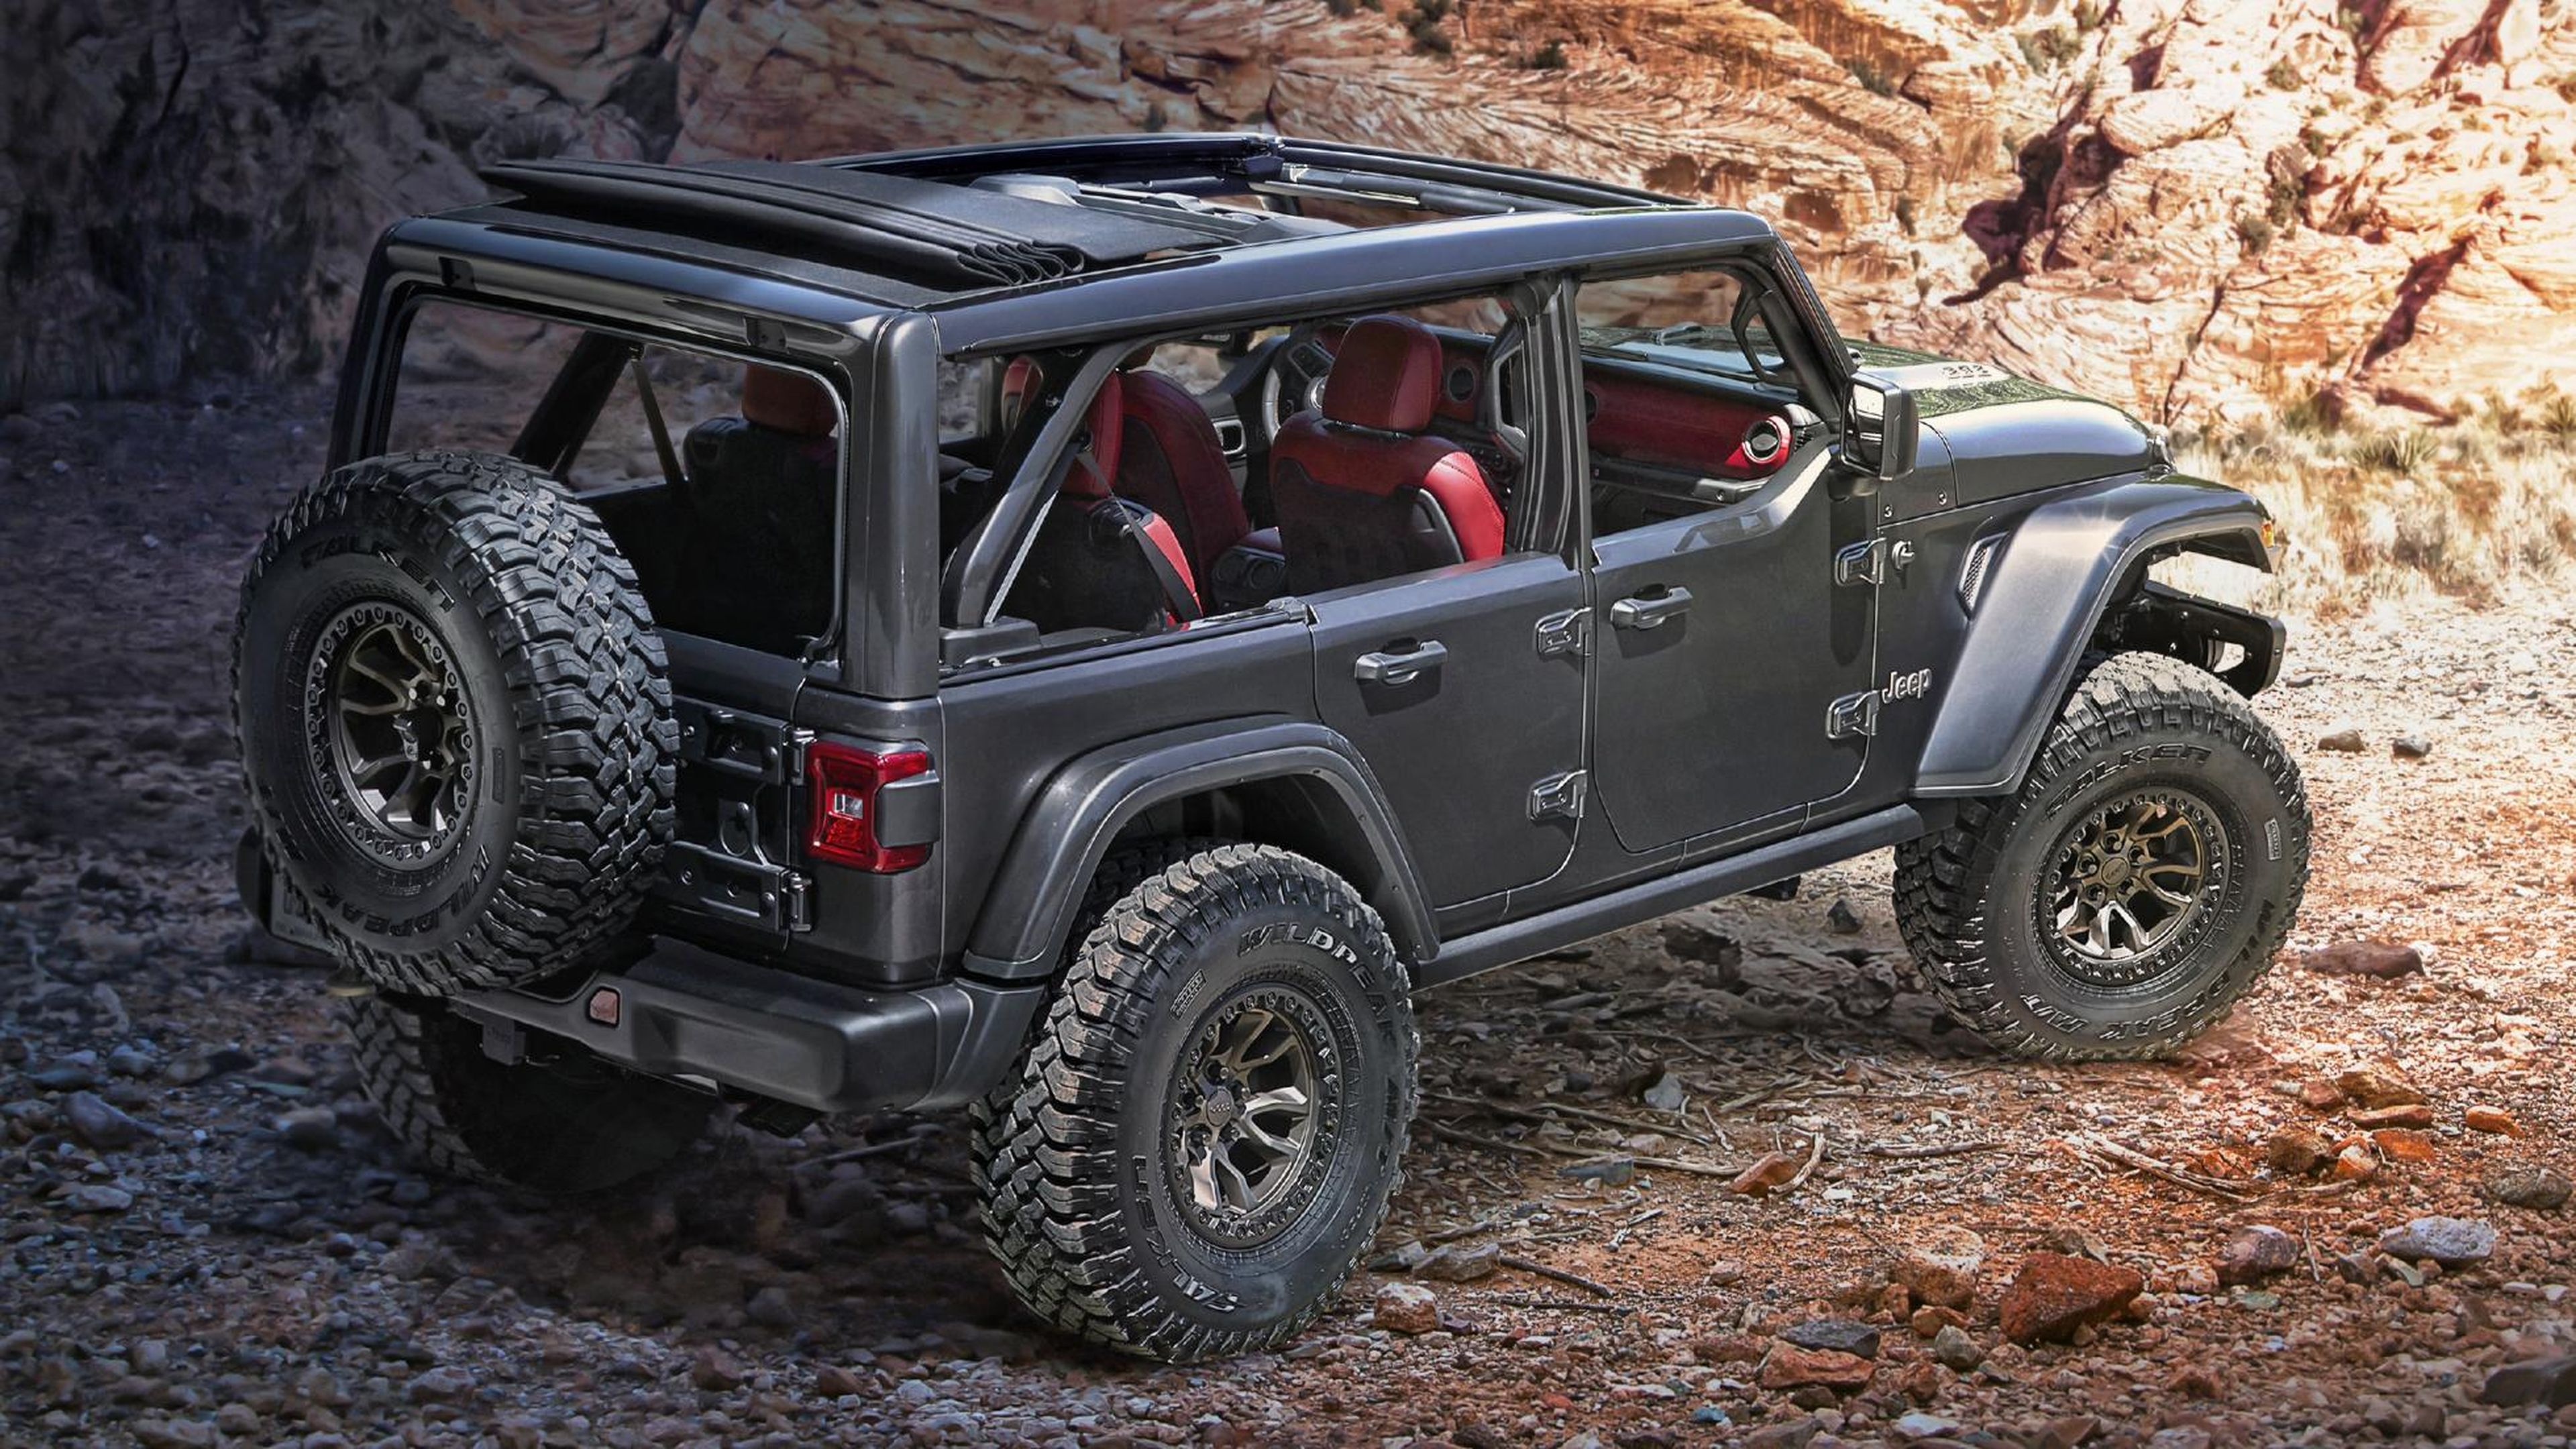 Jeep no ha dicho nada de una versión de dos puertas, pero no sería raro. Foto: Jeep